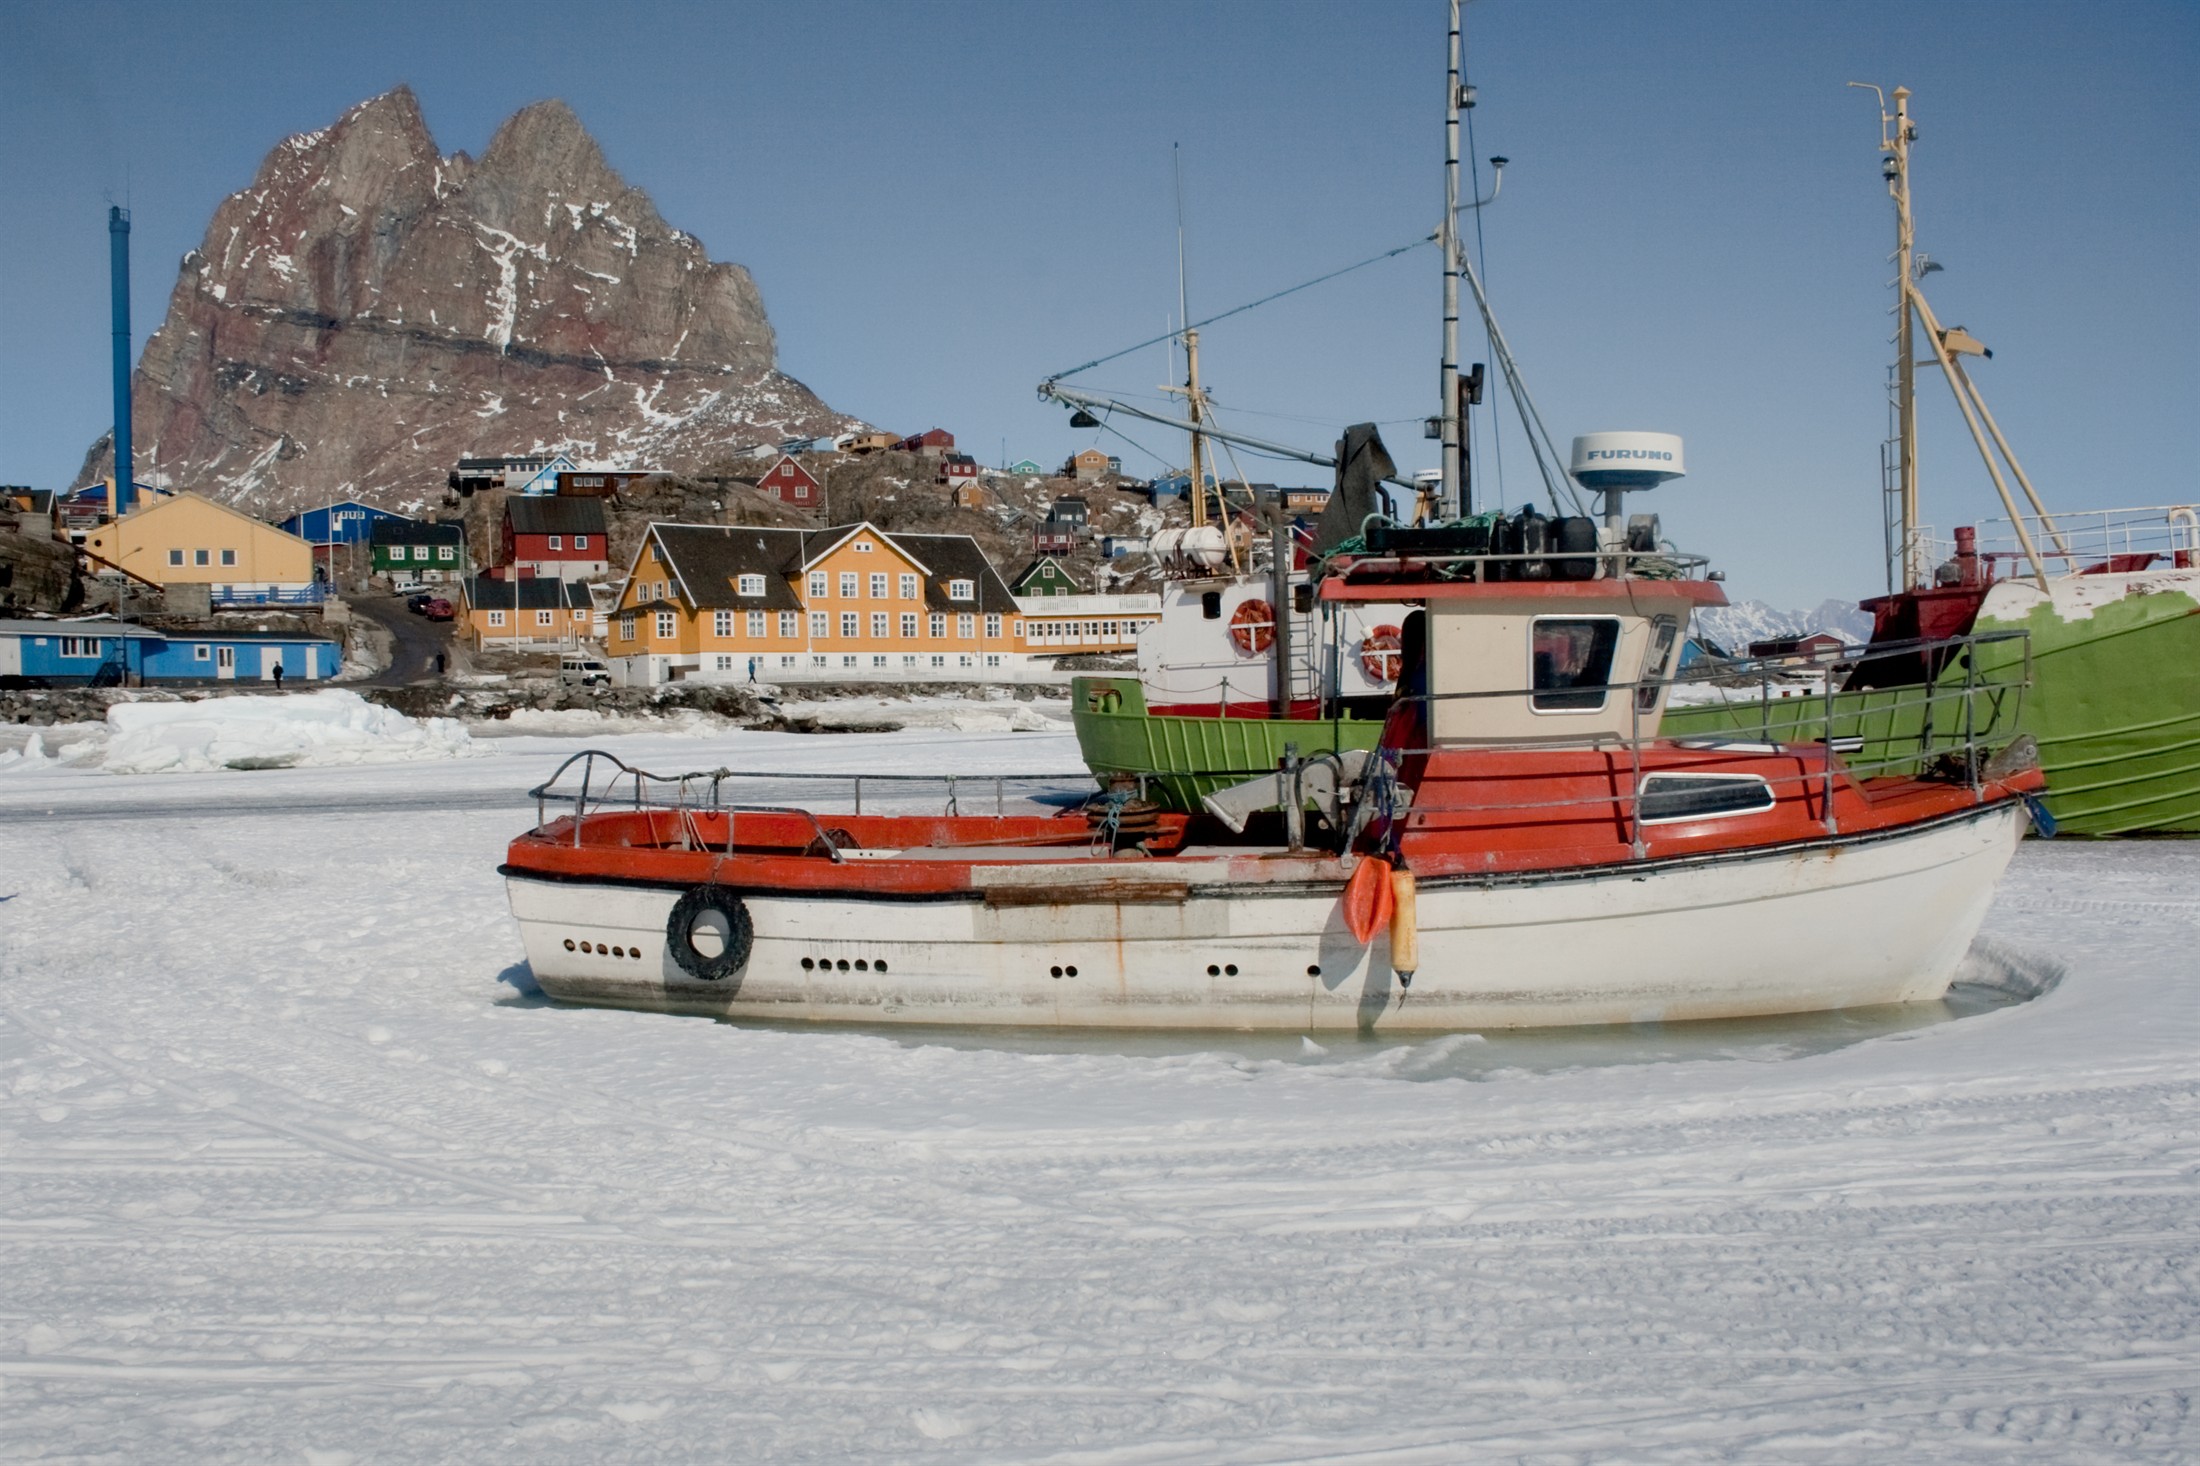 Boats in the ice, Uummannaq, Greenland